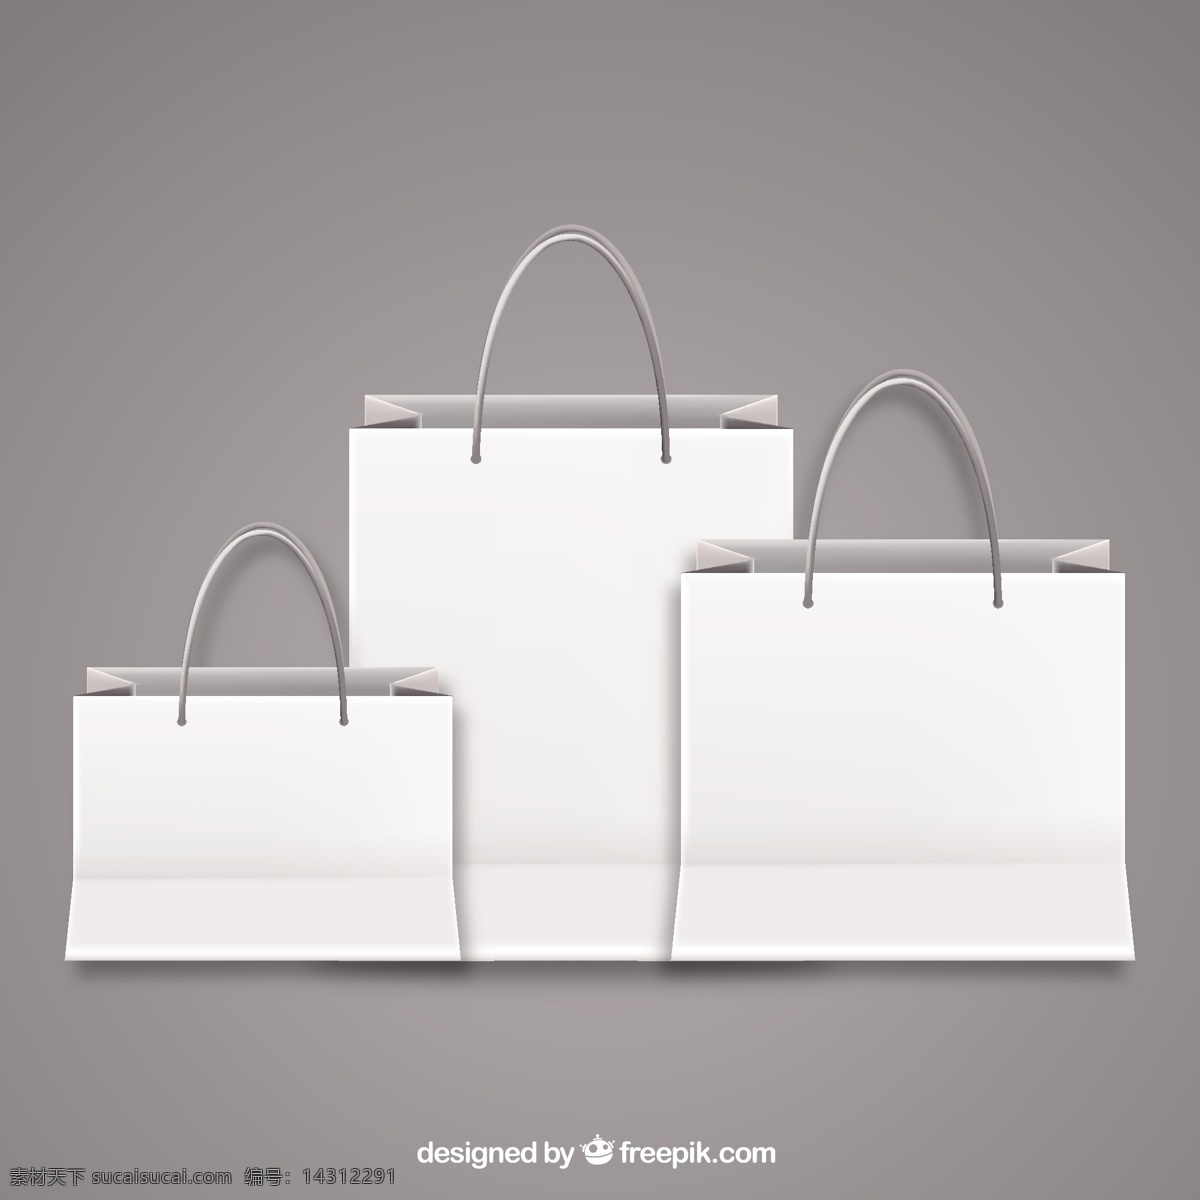 空购物袋 购物 商店 装袋 购物袋 空白 图标 高清 源文件